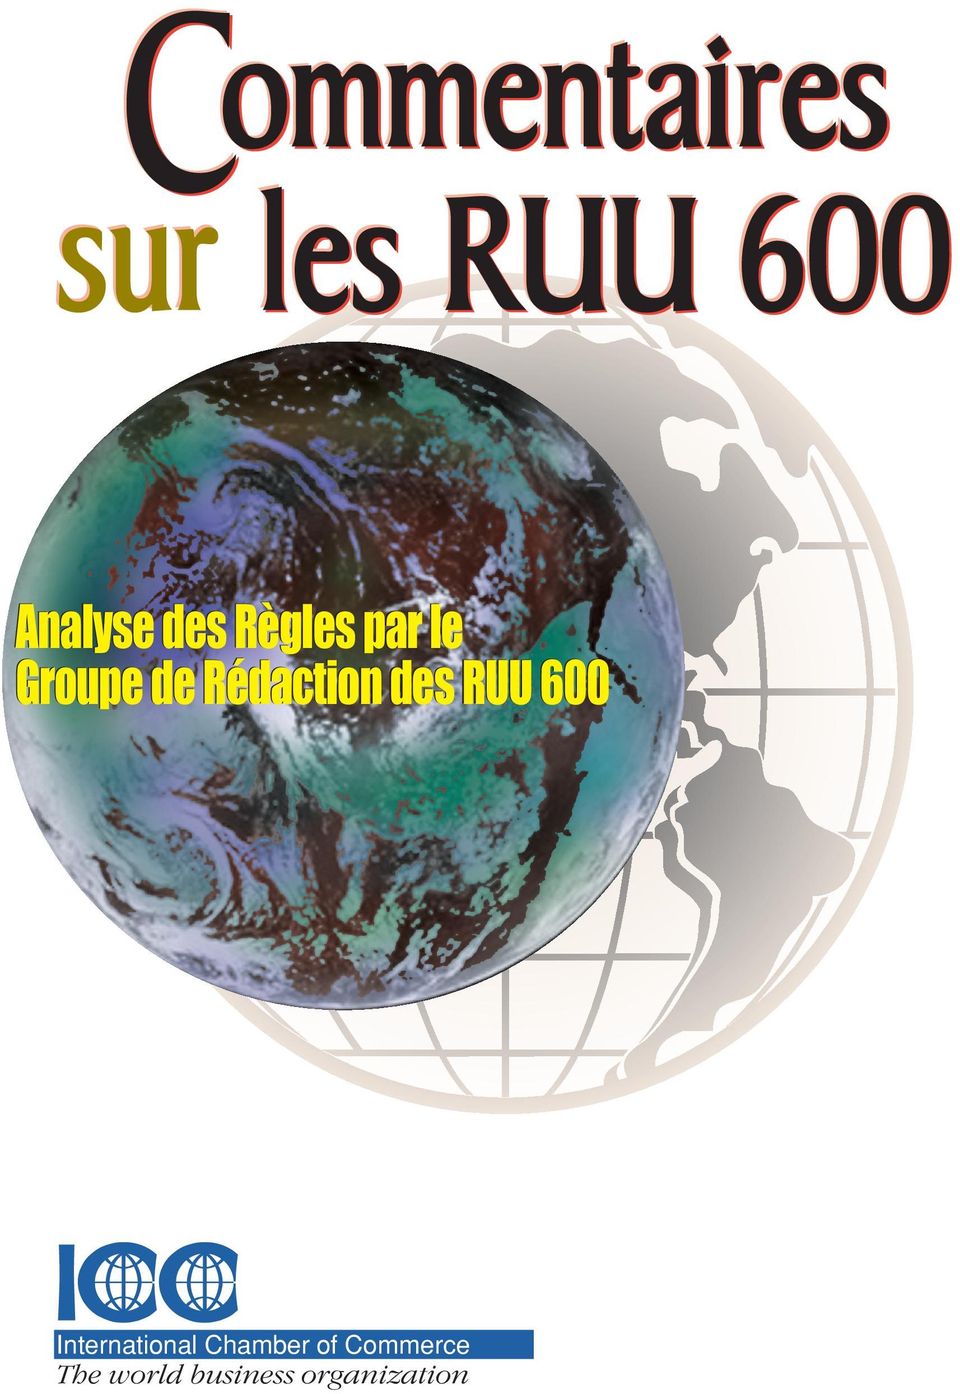 Commentaires sur les RUU 600 apporte des informations importantes quant au processus de réflexion des auteurs lors de la mise à jour des Règles.